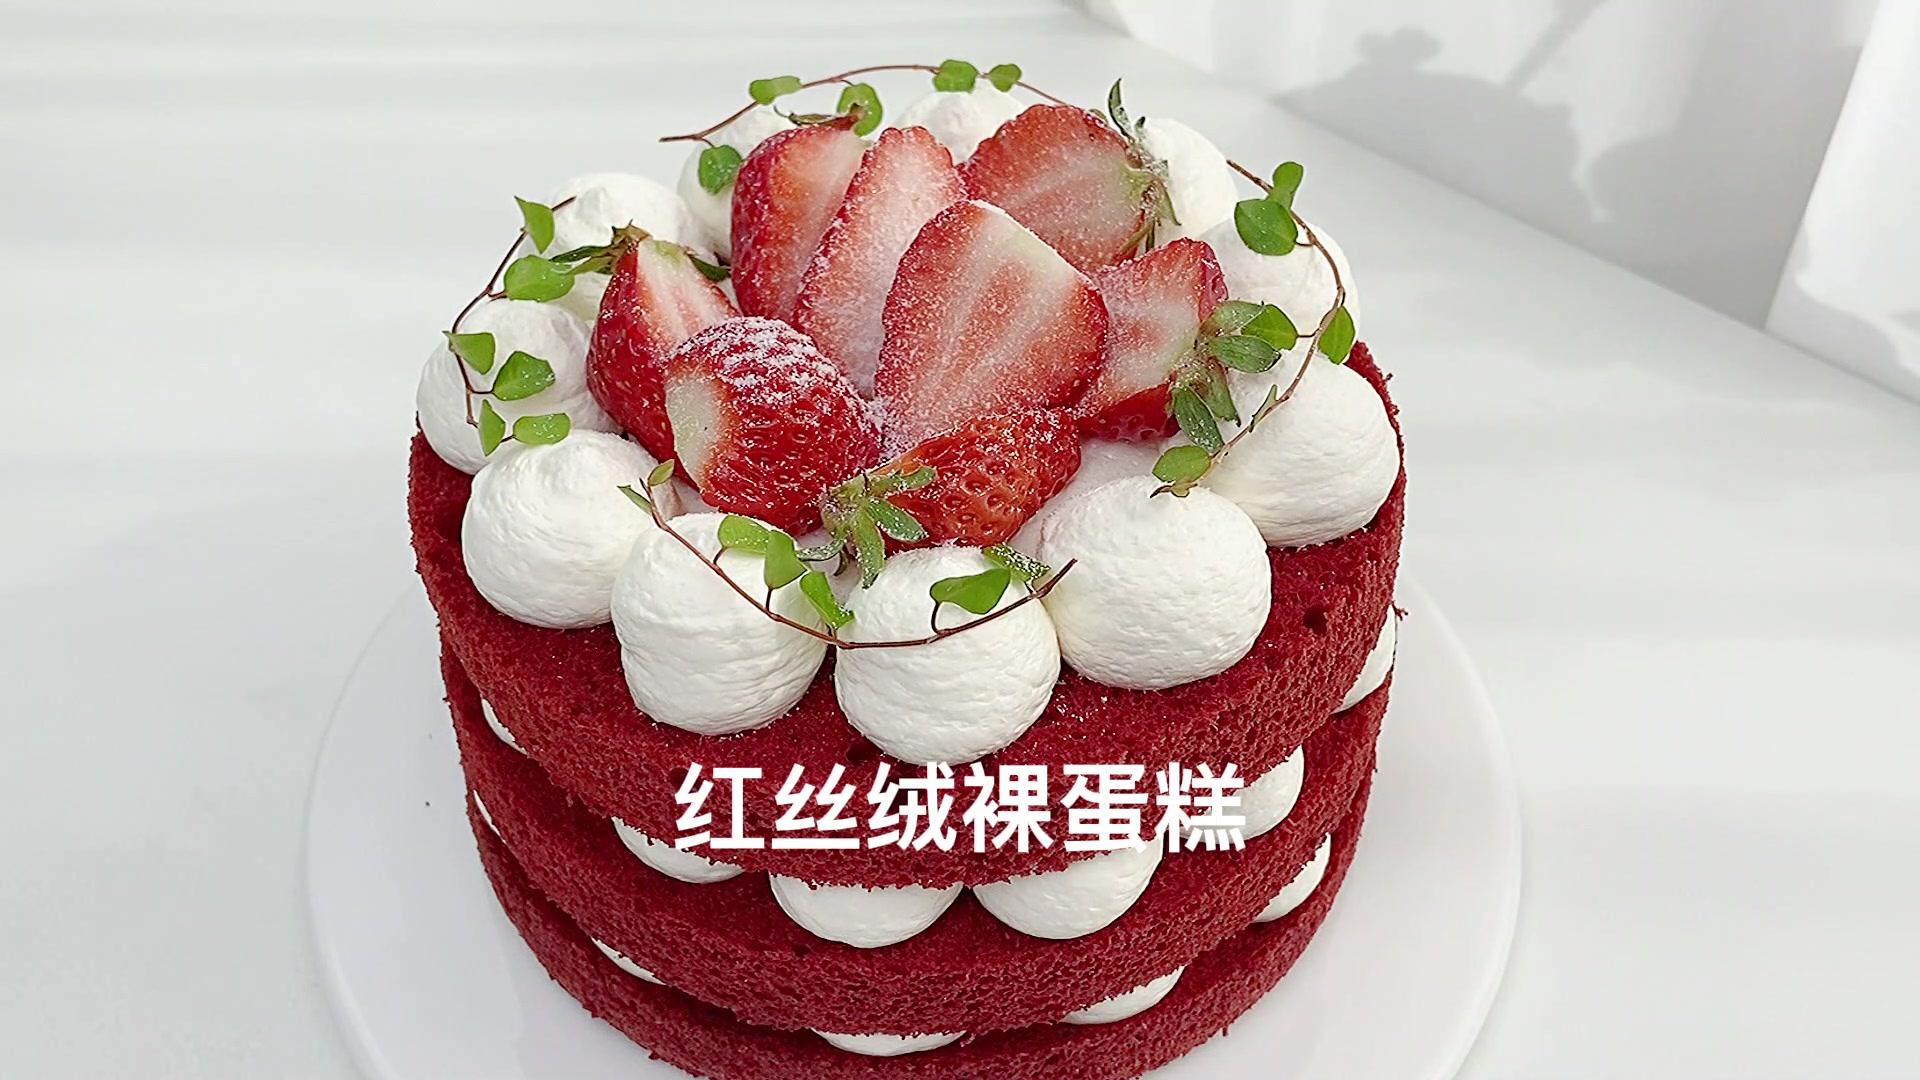 红丝绒水果裸蛋糕怎么做_红丝绒水果裸蛋糕的做法_荷妈美食_豆果美食